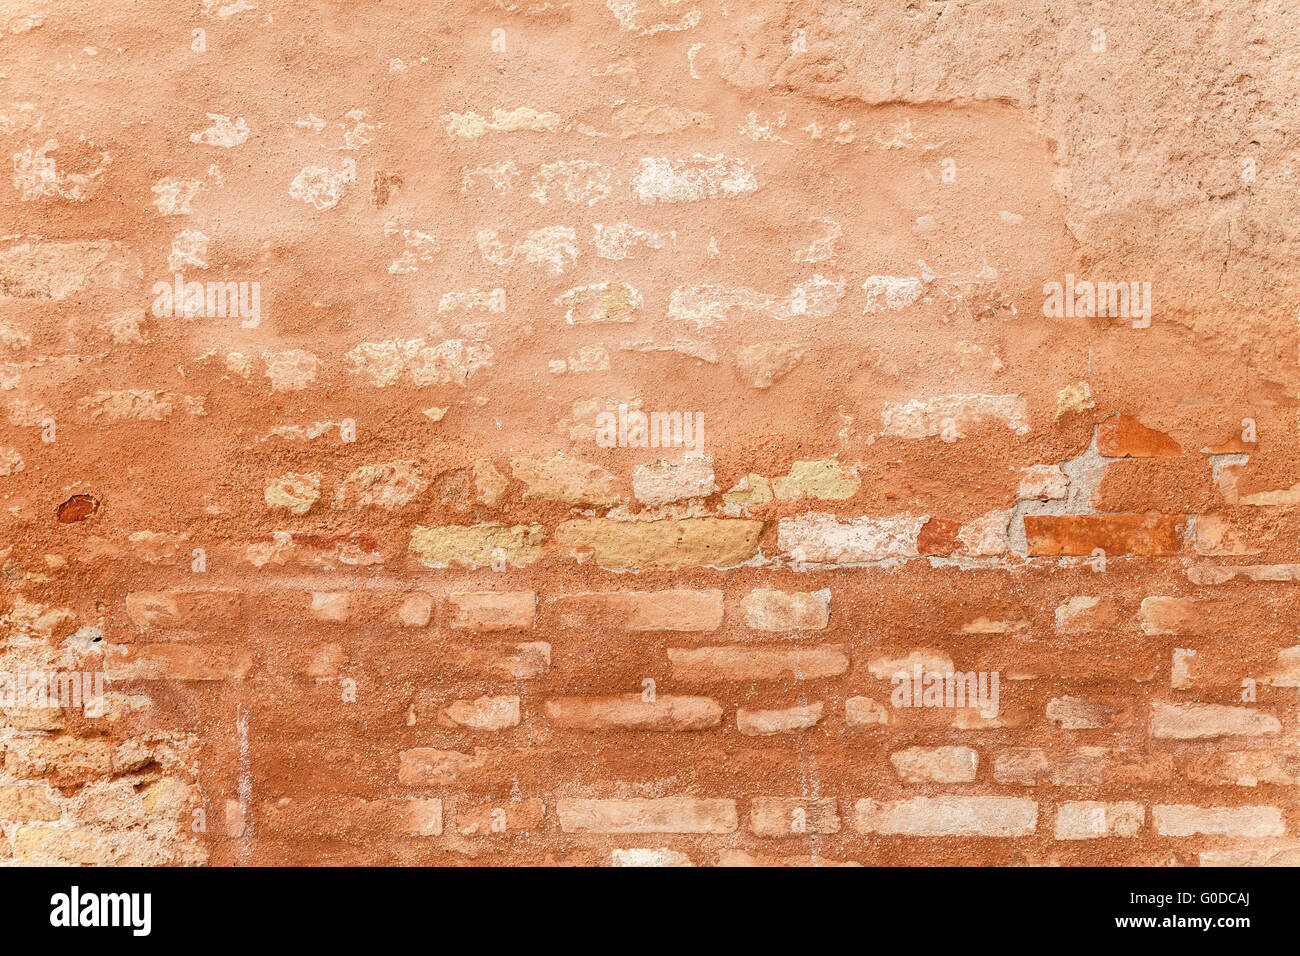 La texture poreuse d'un mur de brique médiévale Banque D'Images